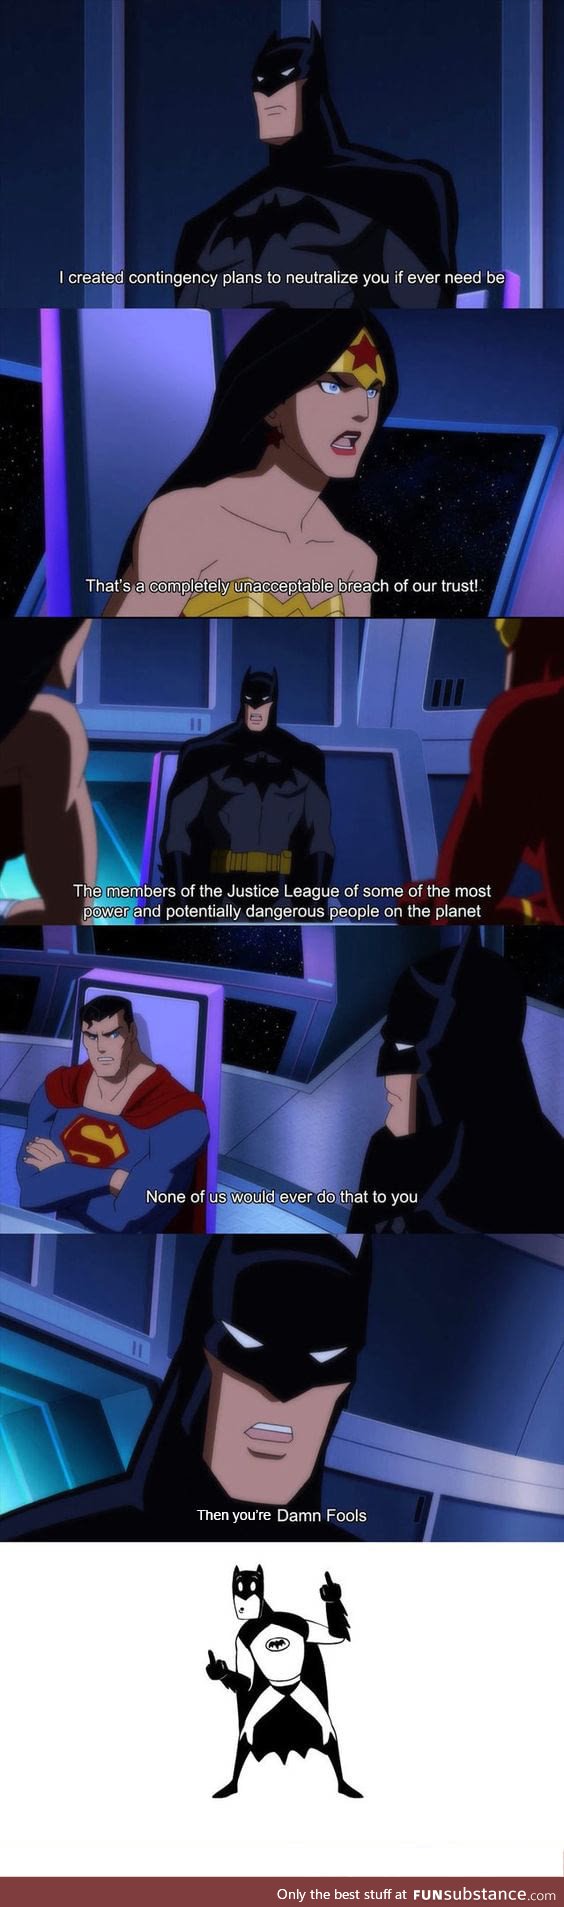 Batman is my favorite hero